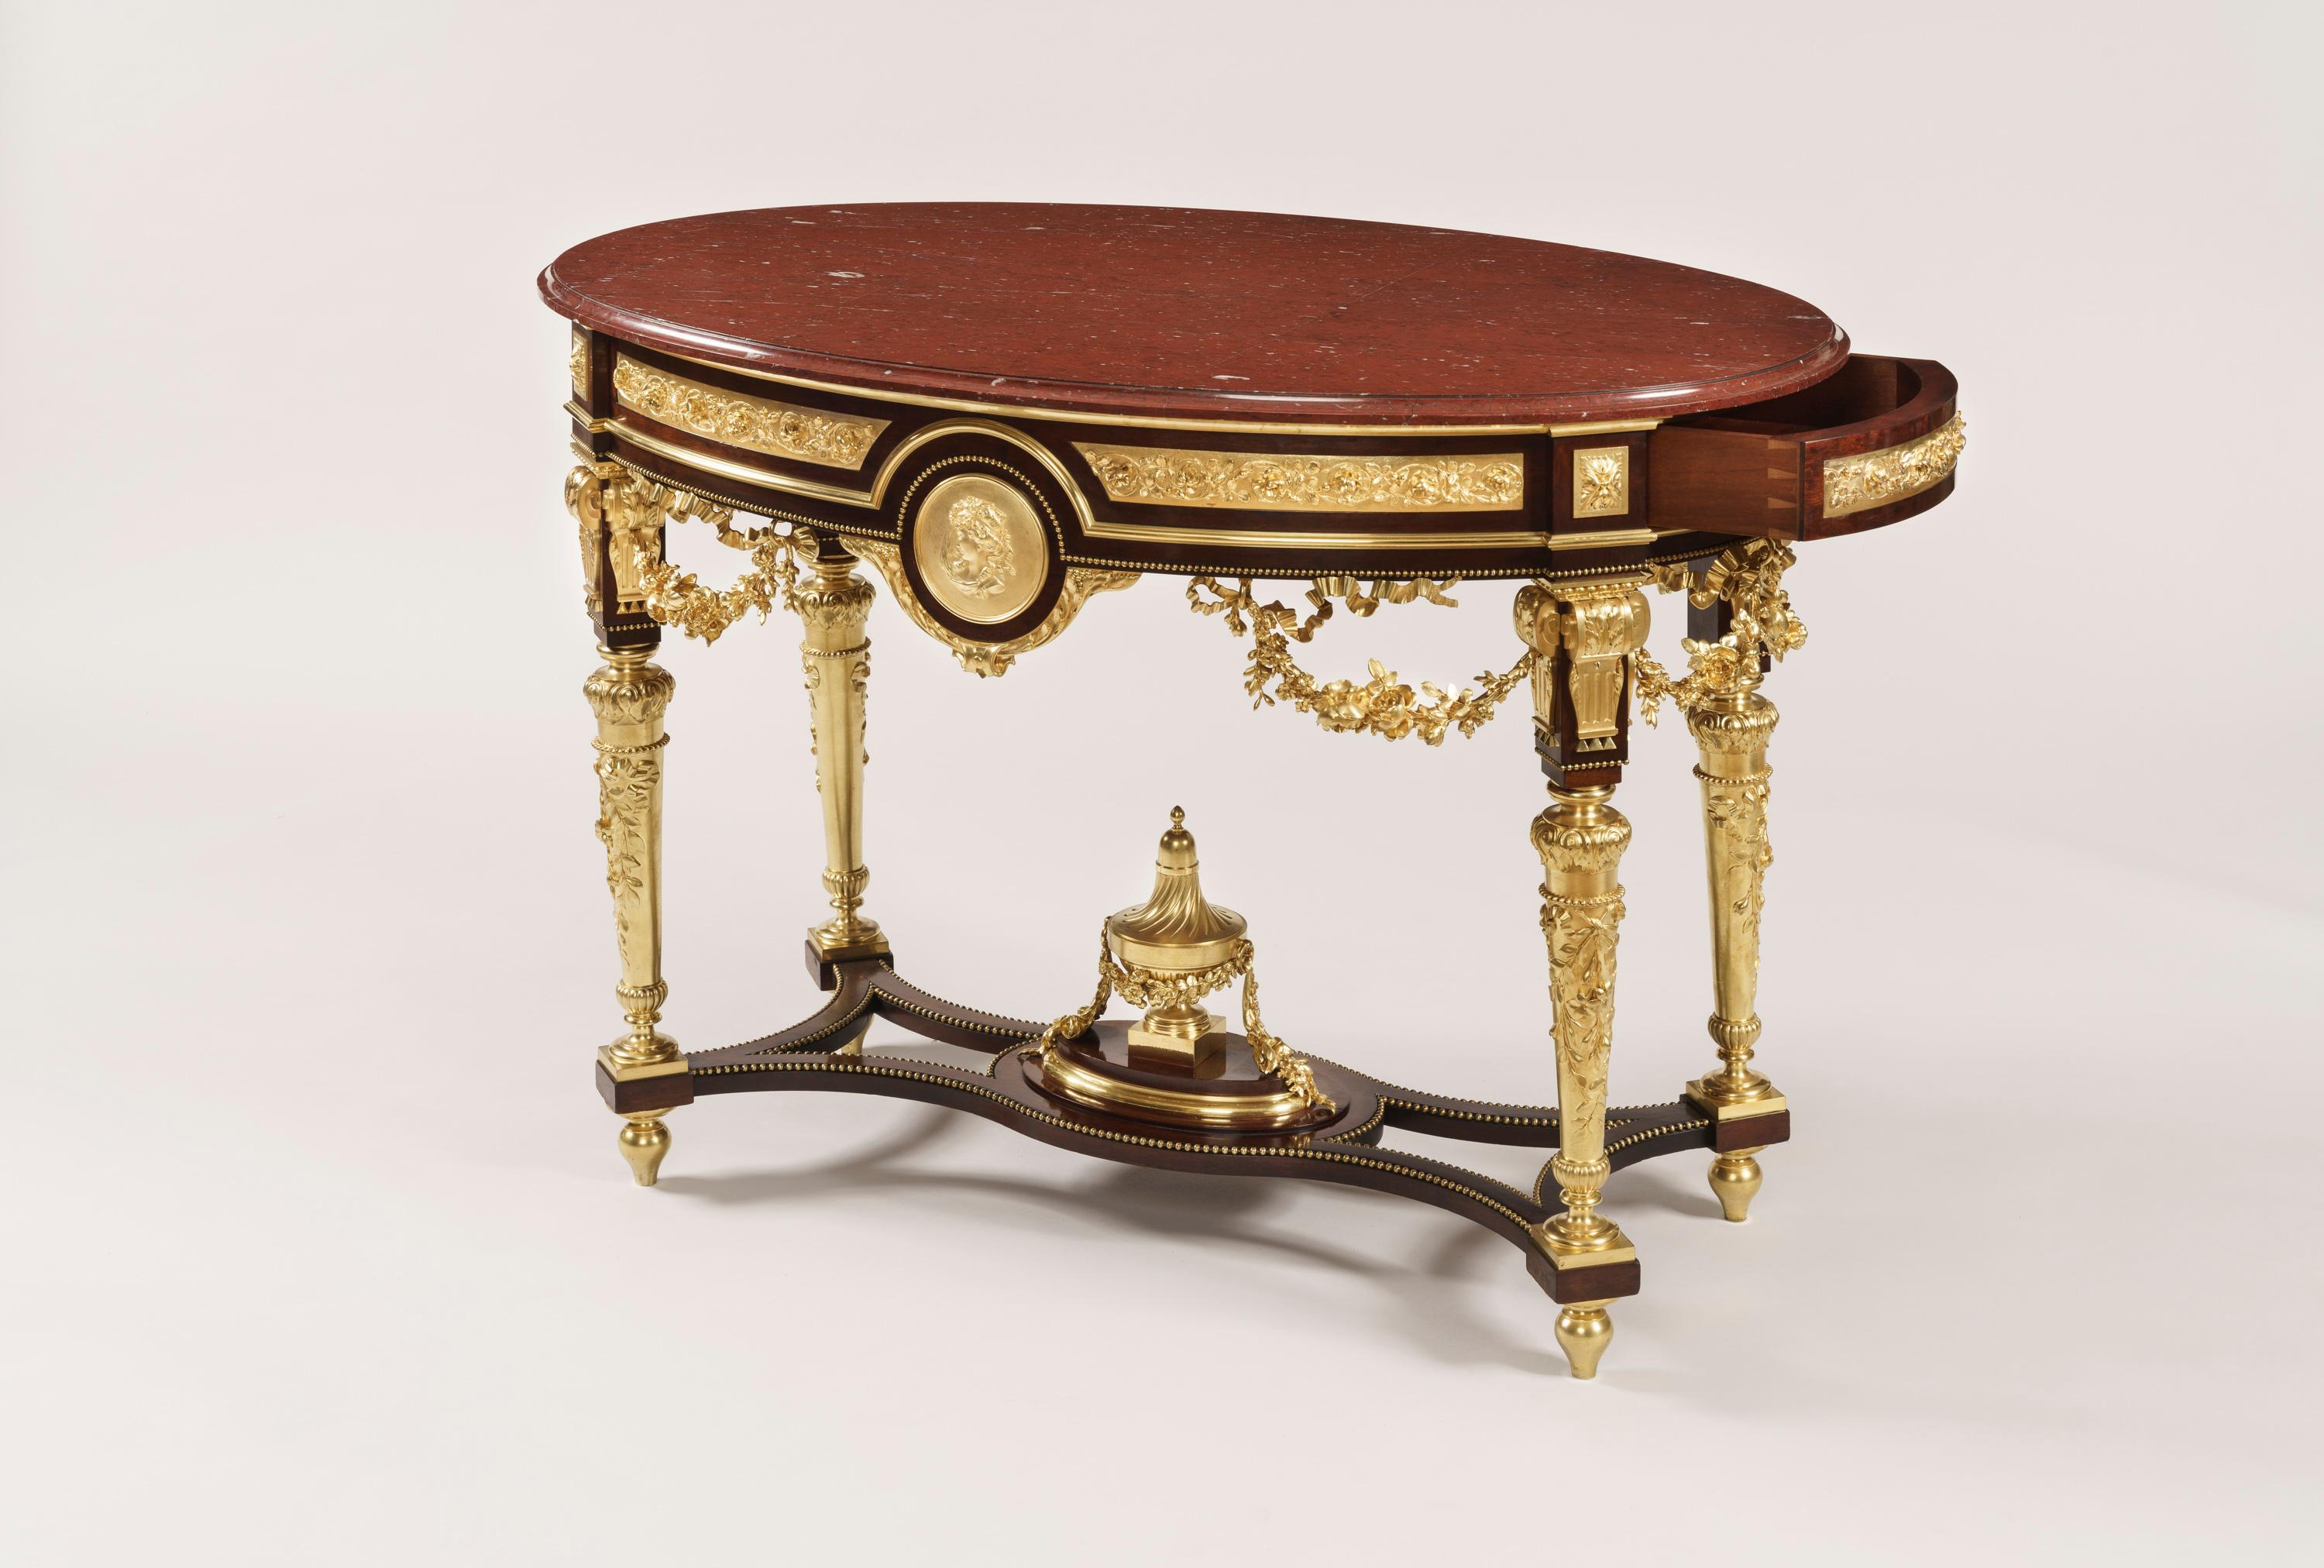 Ein prächtiger Mitteltisch im Stil von Louis XVI.

Von freistehenden elliptische Form, die Mahagoni-Rahmen reich mit fein gegossenen und ziselierten Ormolu verziert, und mit einem Daumennagel geformten Rand Griotte Pyrenäen-Plattform; steigt von